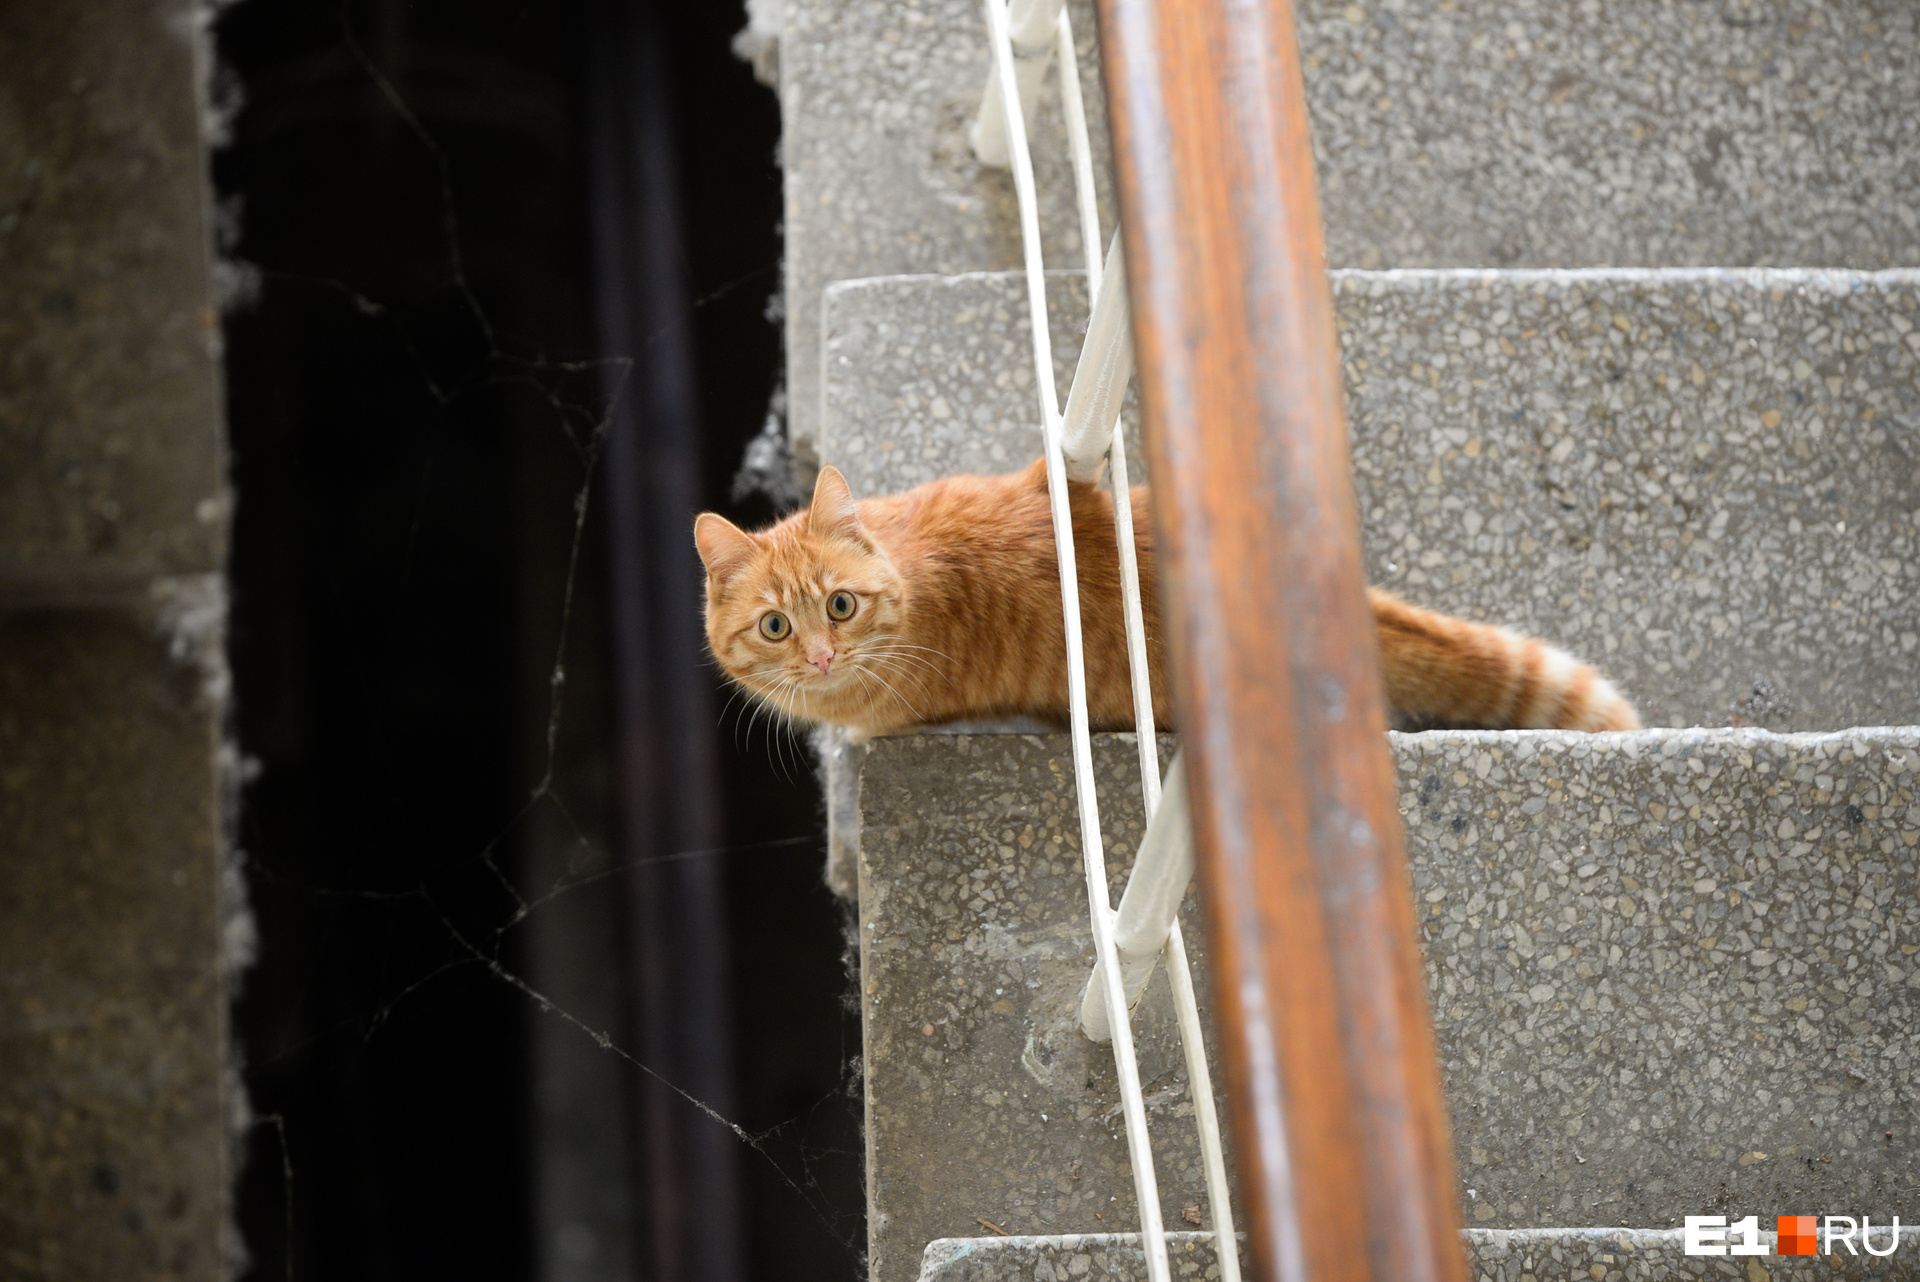 Гости в этом здании сейчас бывают редко, поэтому кошка с любопытством разглядывает чужих людей